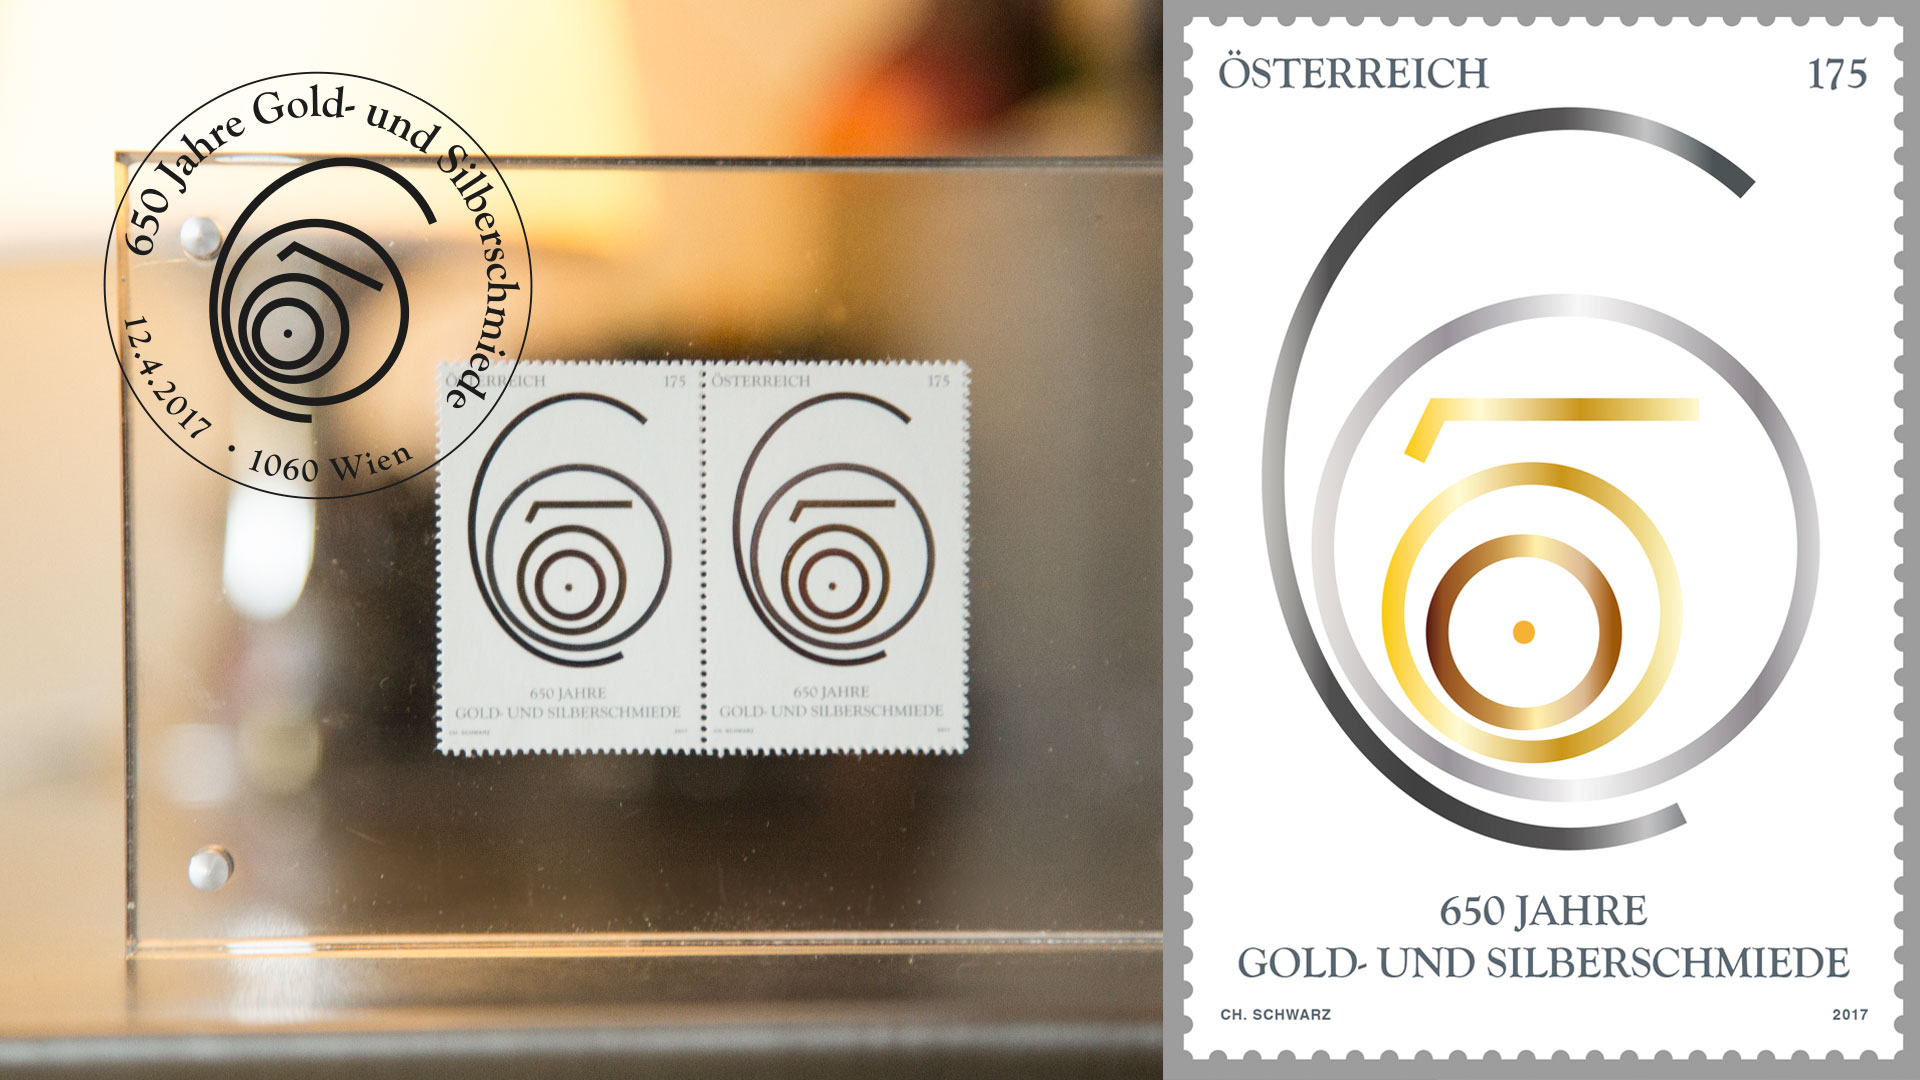 Die Jubiläumsbriefmarke der 650 Jahre Gold- und Silberschmiede